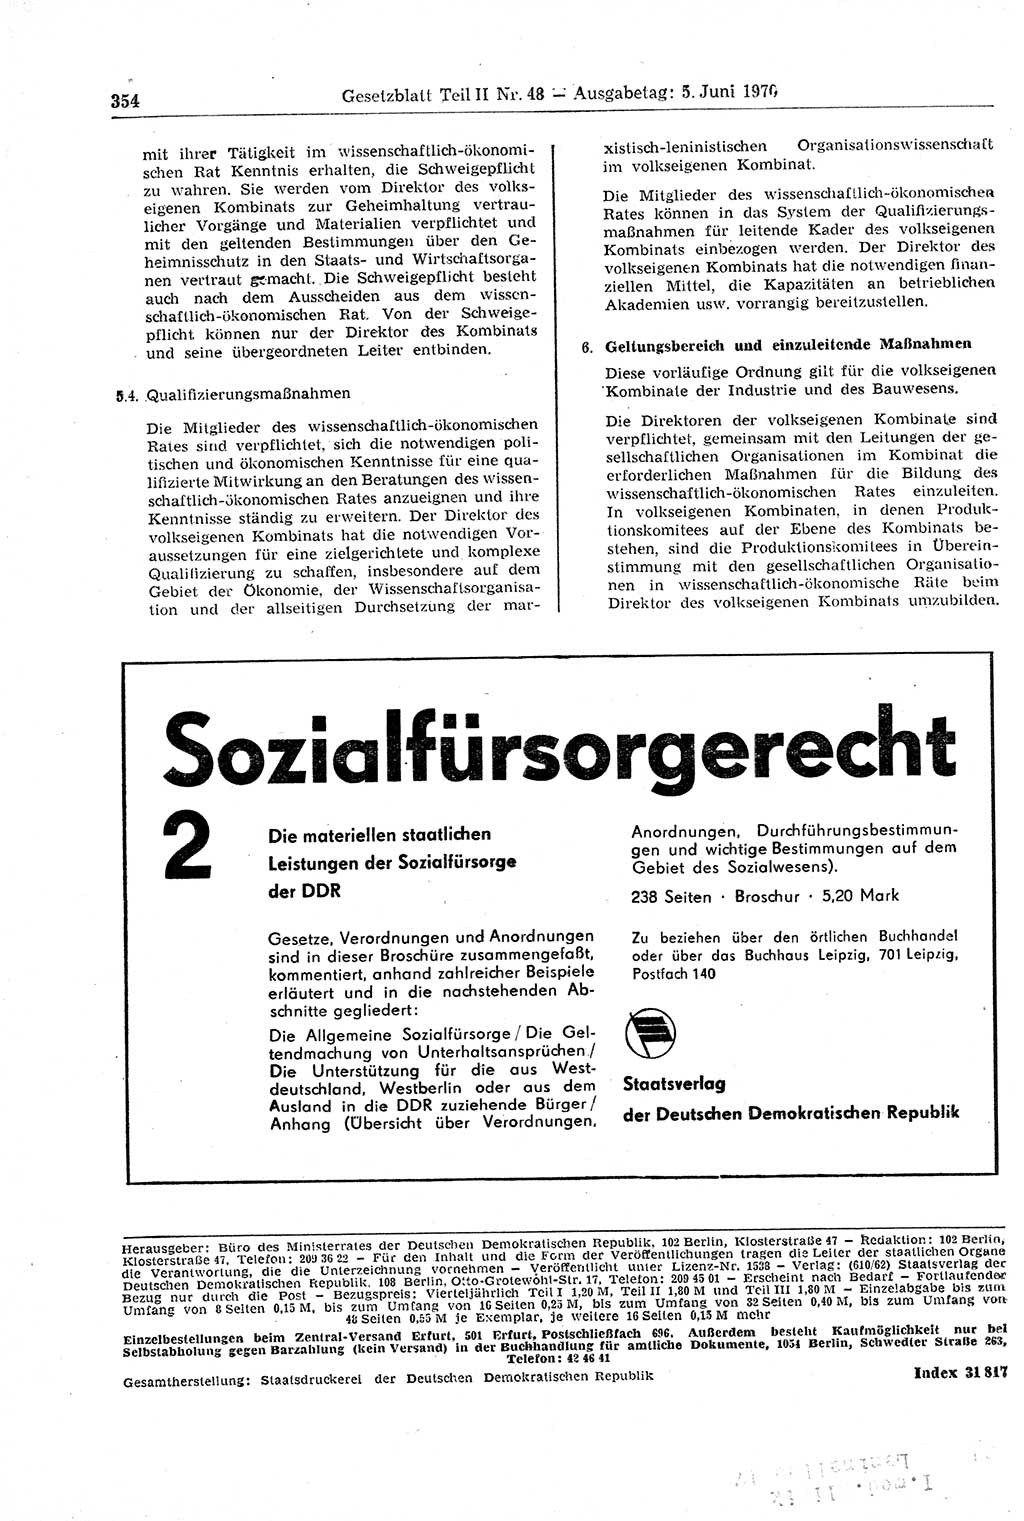 Gesetzblatt (GBl.) der Deutschen Demokratischen Republik (DDR) Teil ⅠⅠ 1970, Seite 354 (GBl. DDR ⅠⅠ 1970, S. 354)